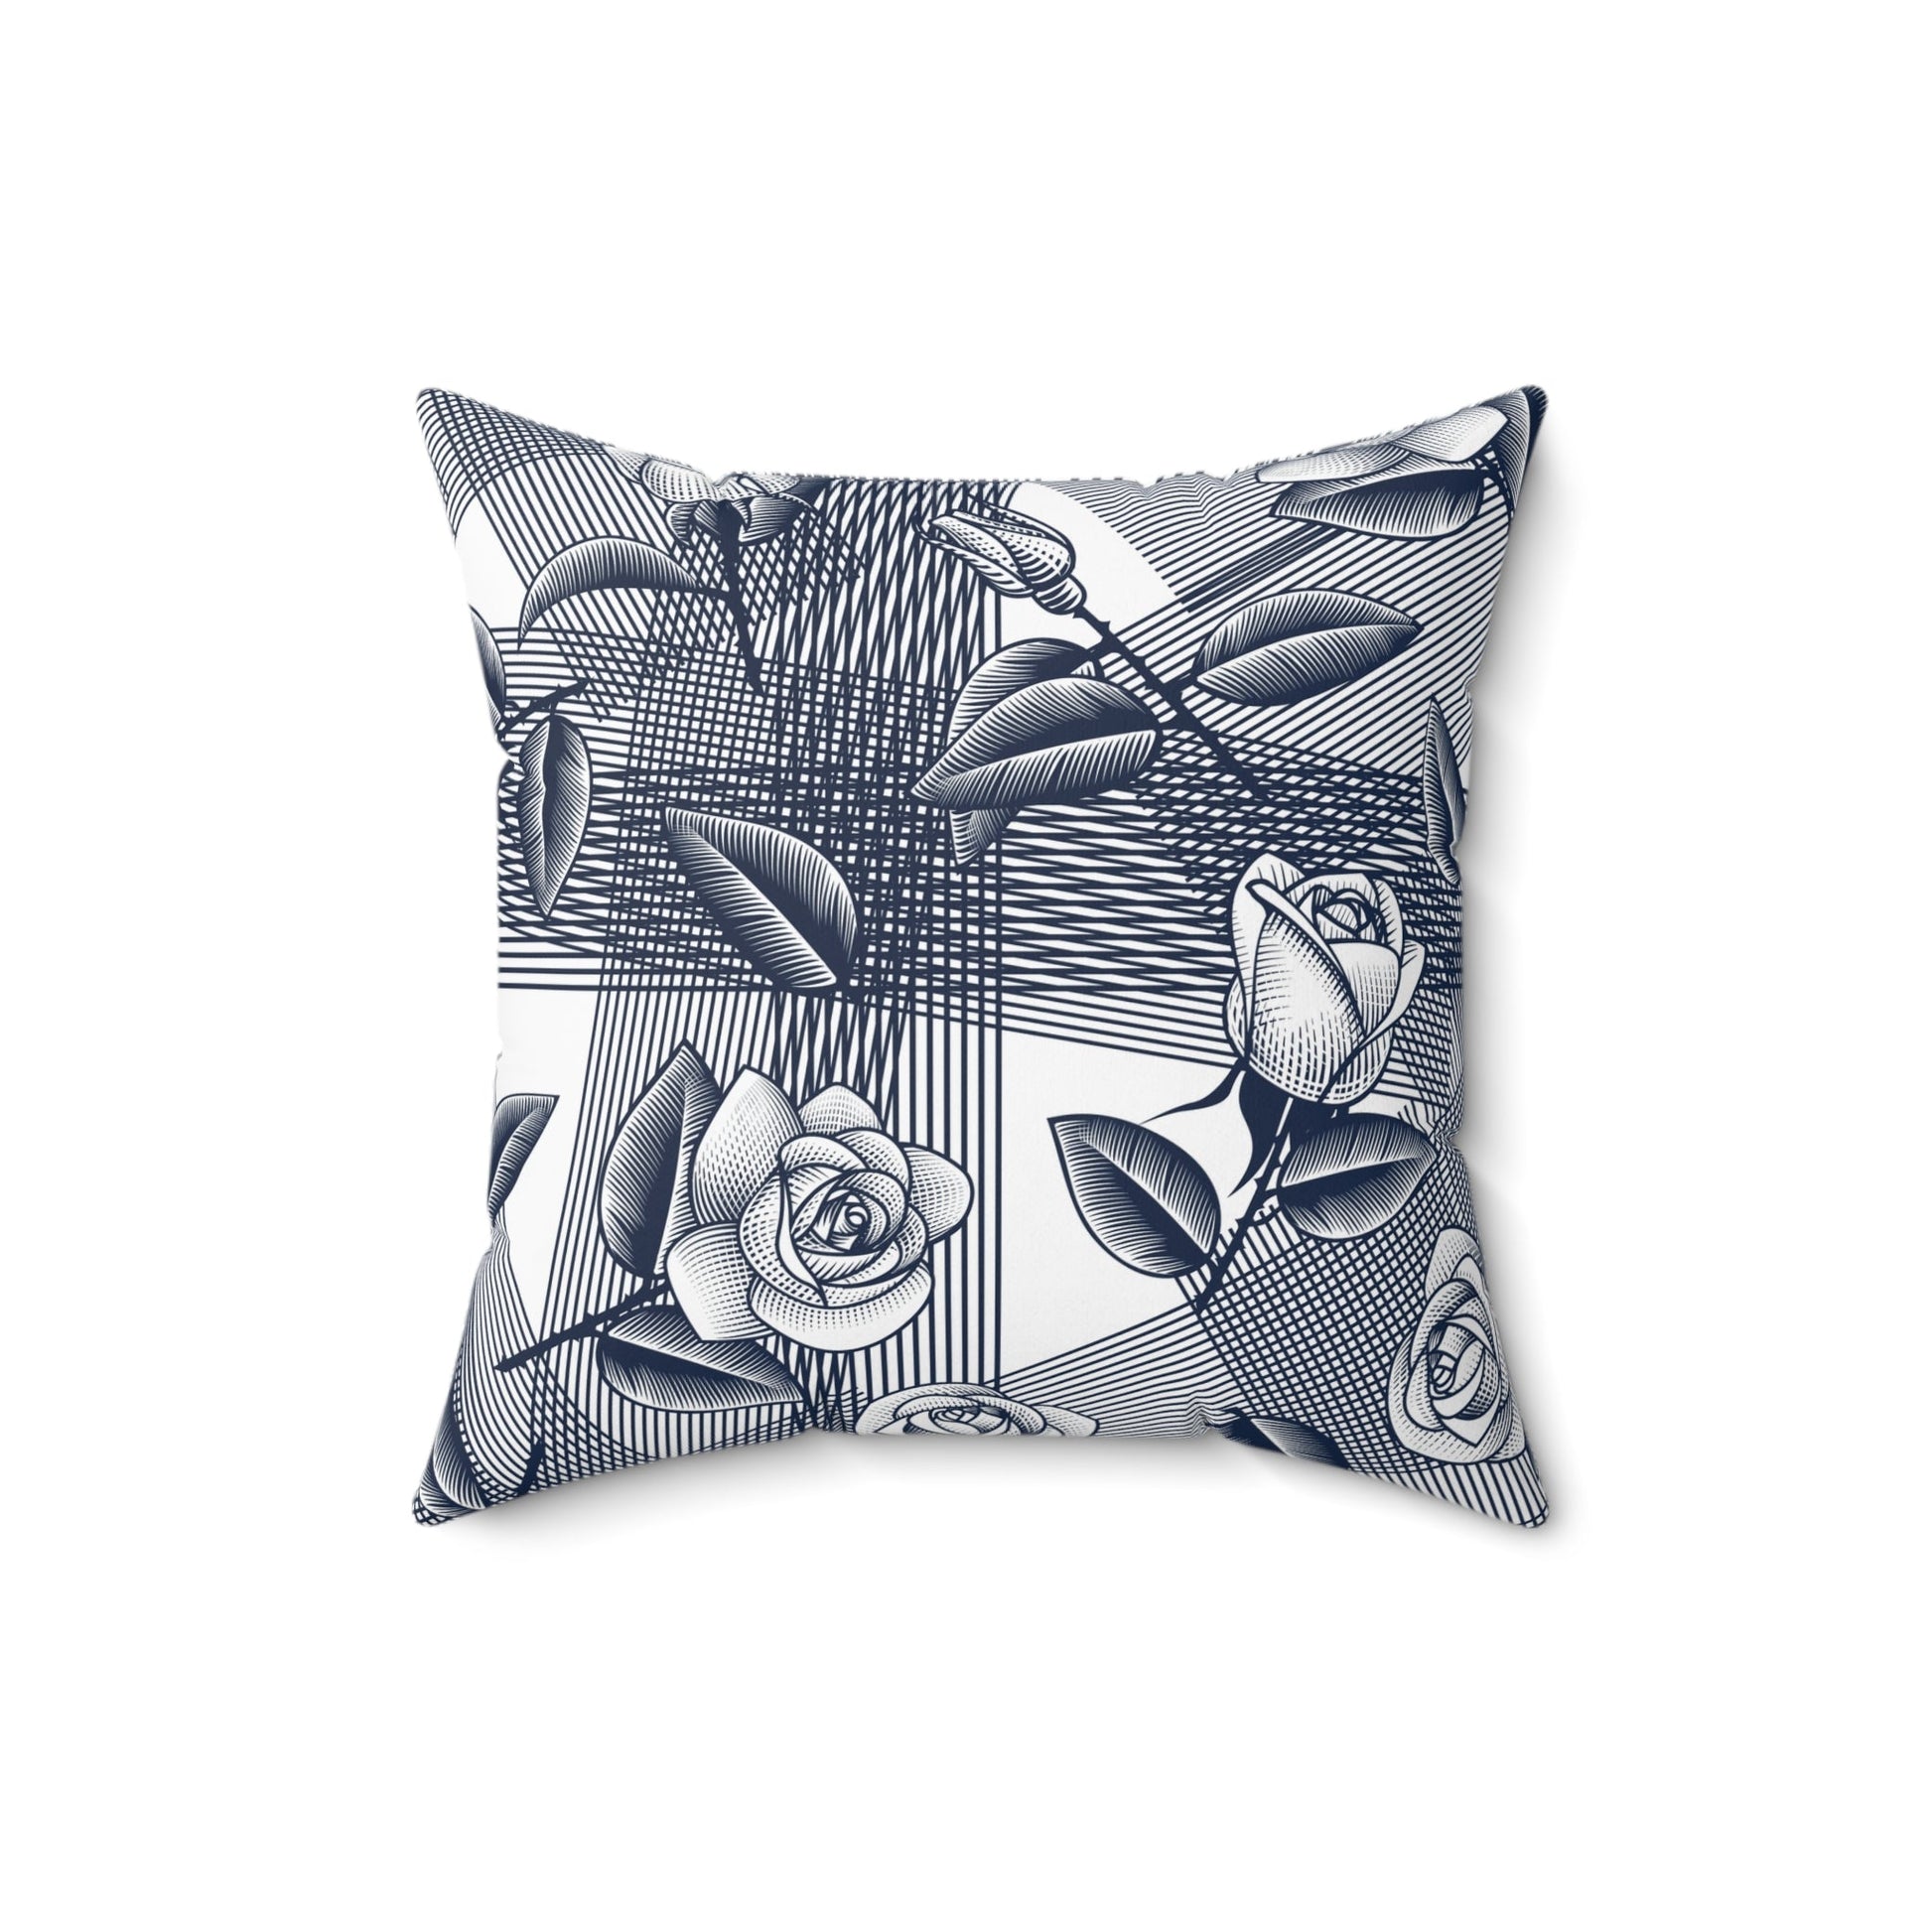 Home Decor - Spun Polyester Square Pillow